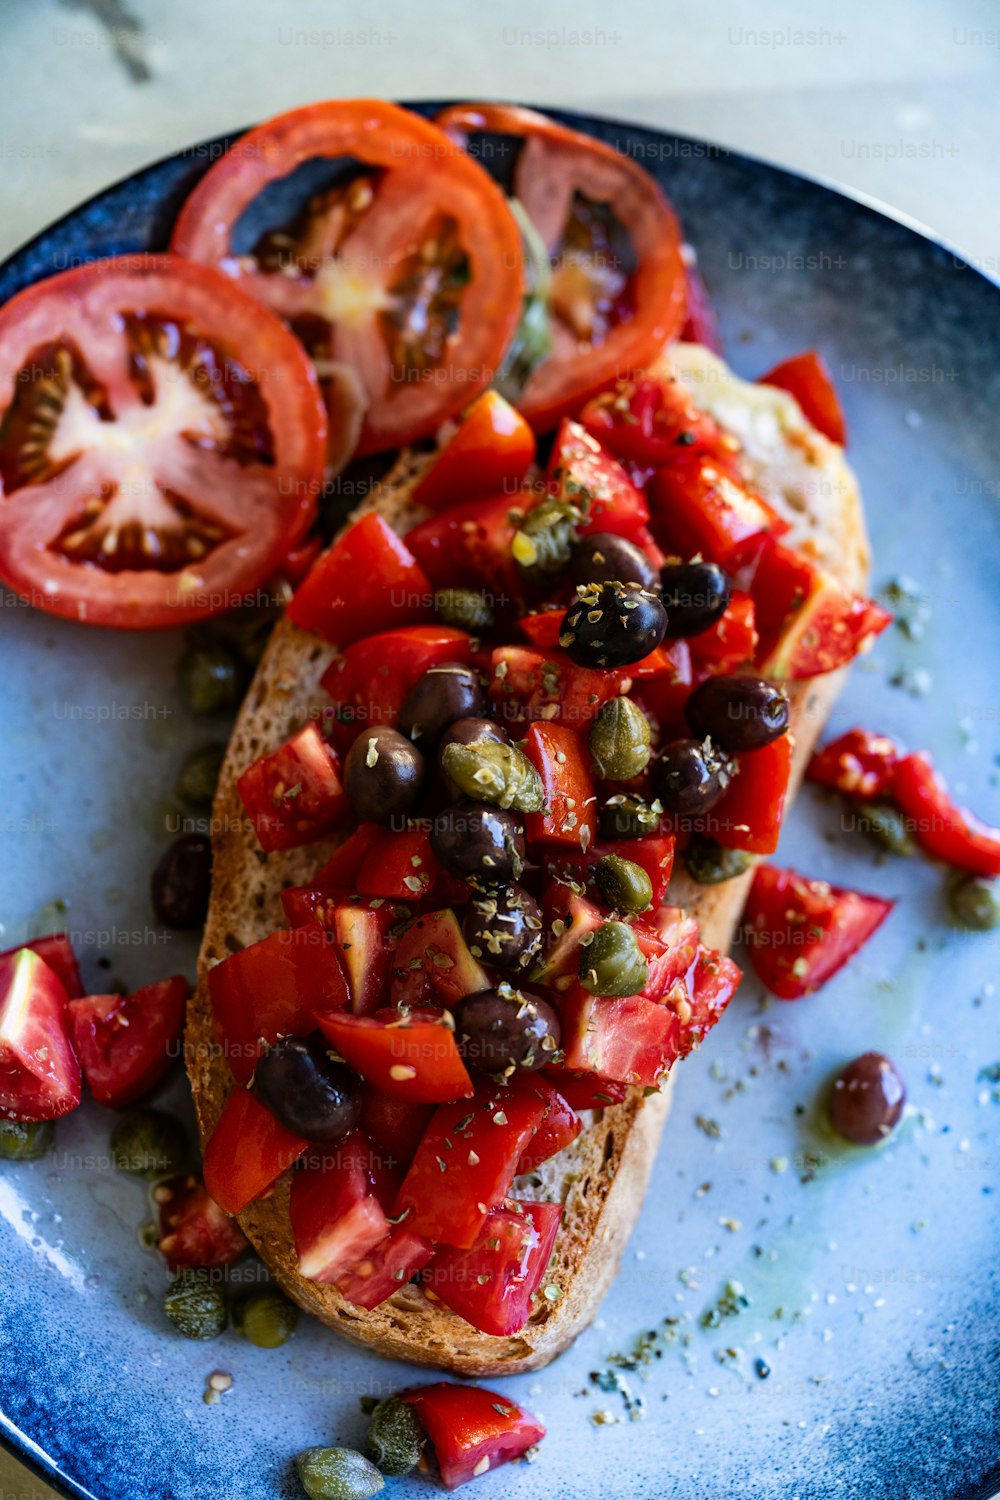 une assiette bleue surmontée d’un morceau de pain recouvert de tomates et d’olives